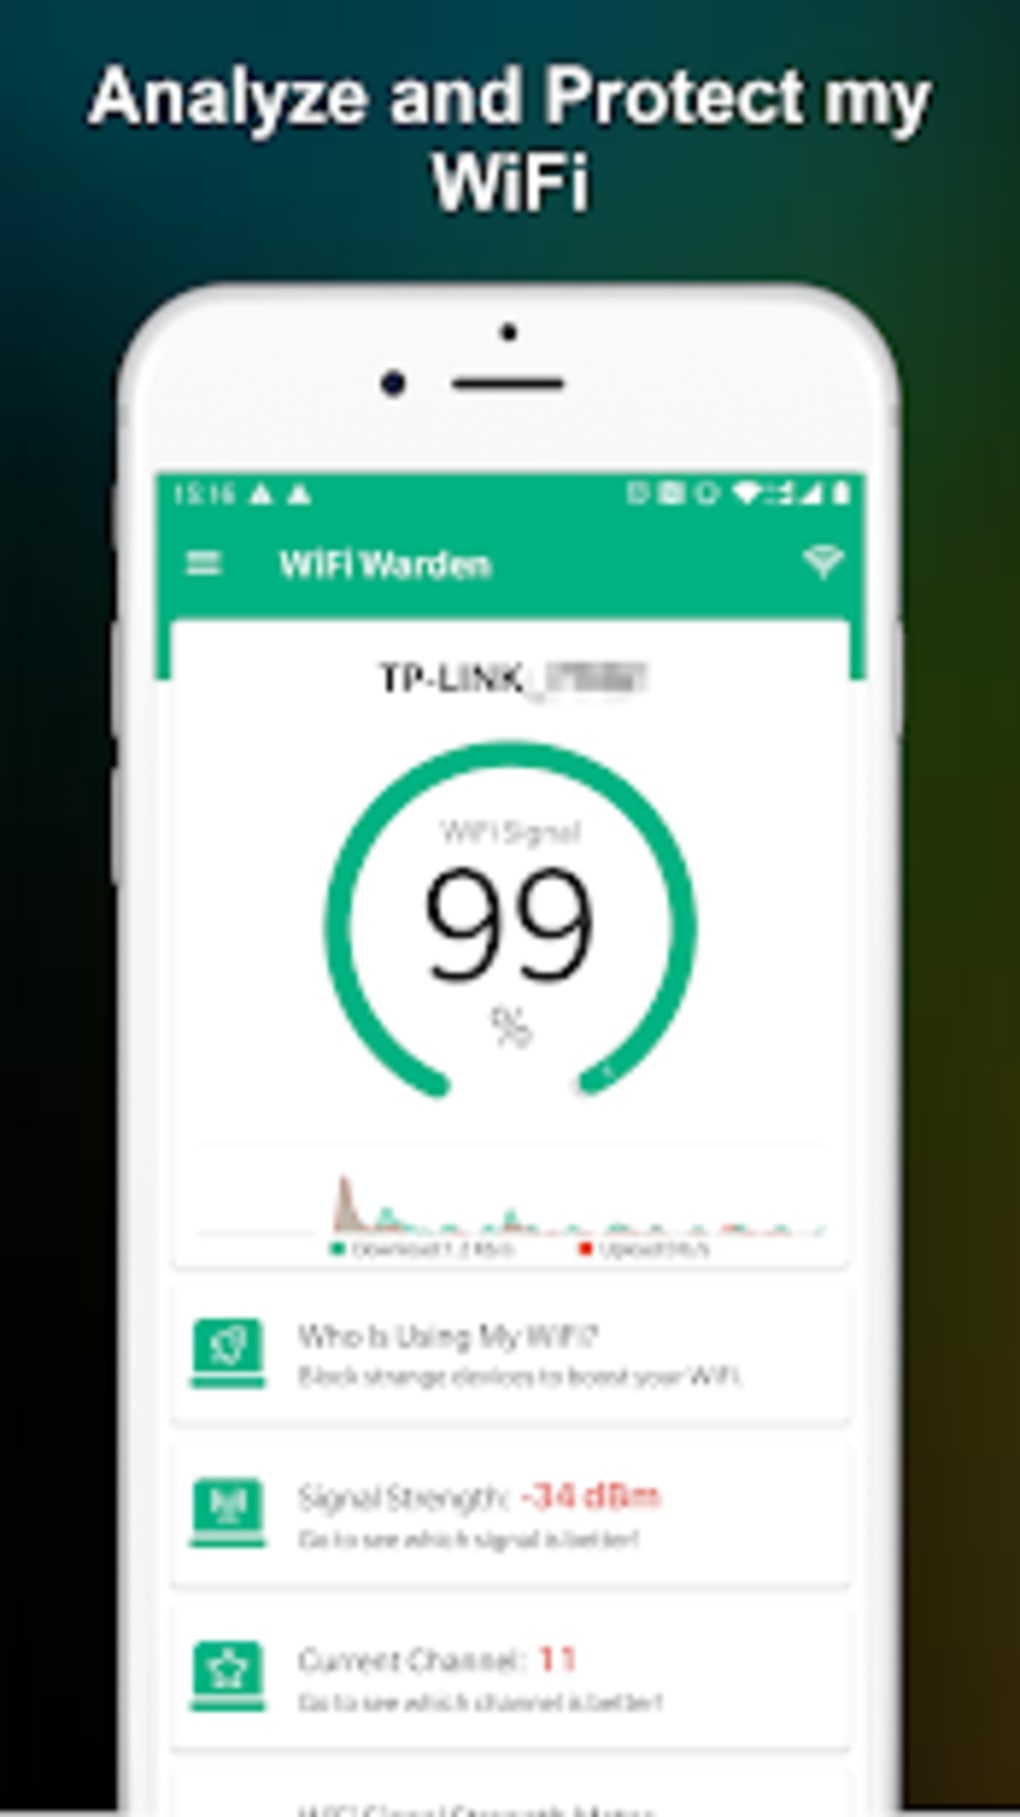 WiFi Warden - Apps on Google Play